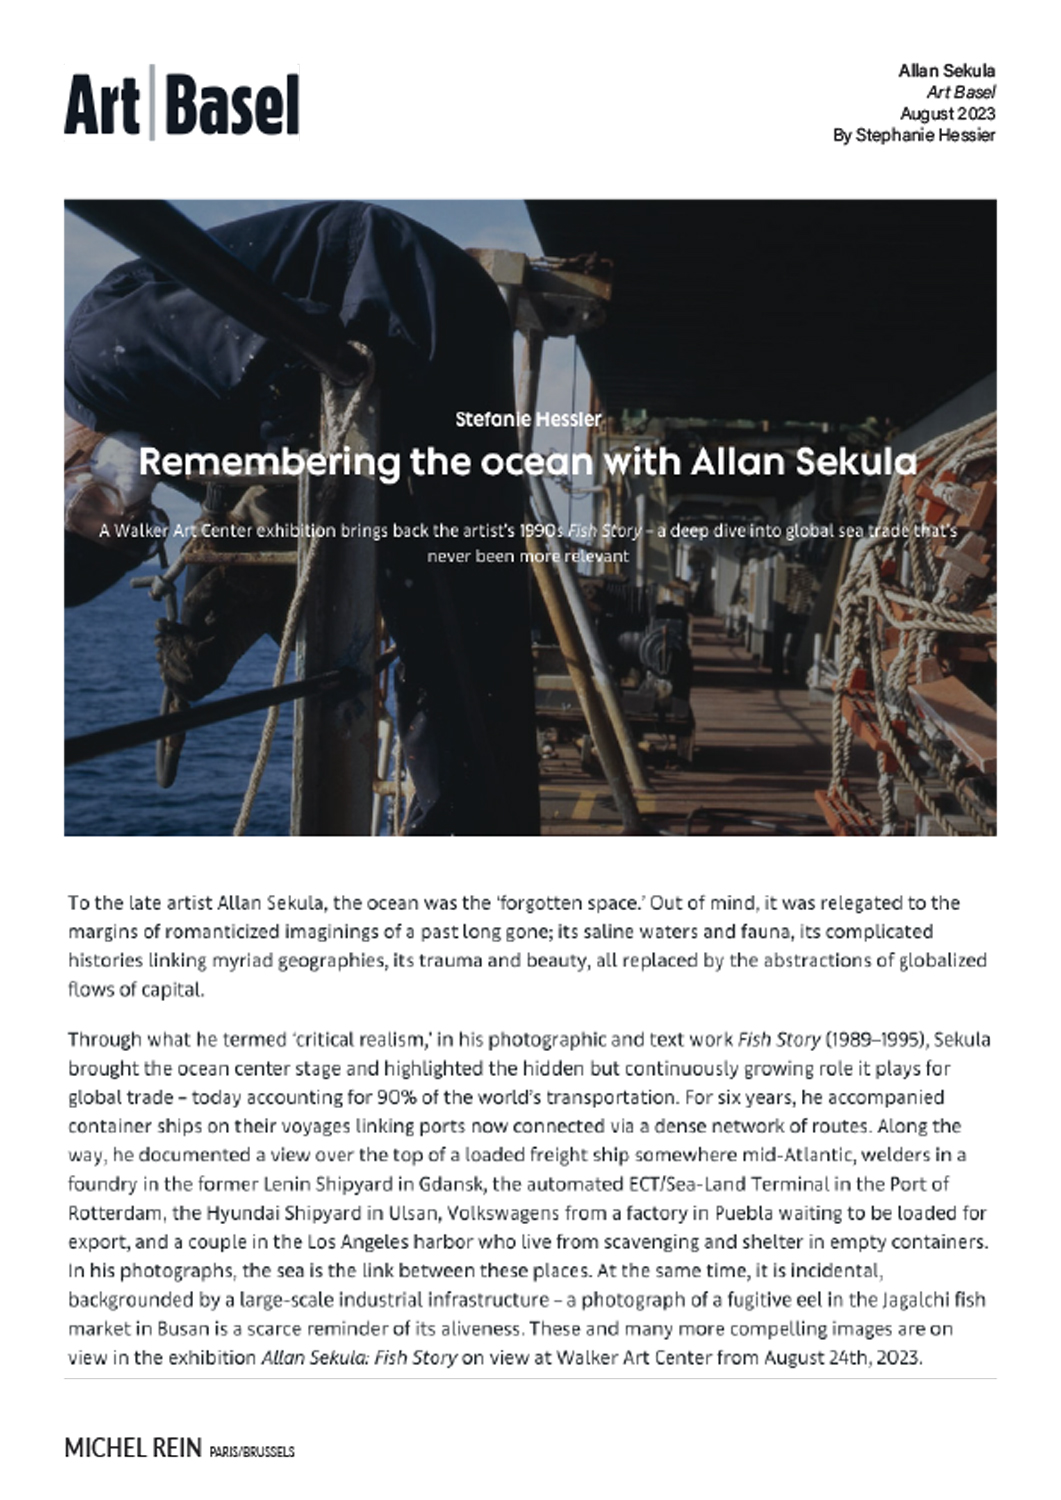 Remembering the ocean with Allan Sekula - Art Basel